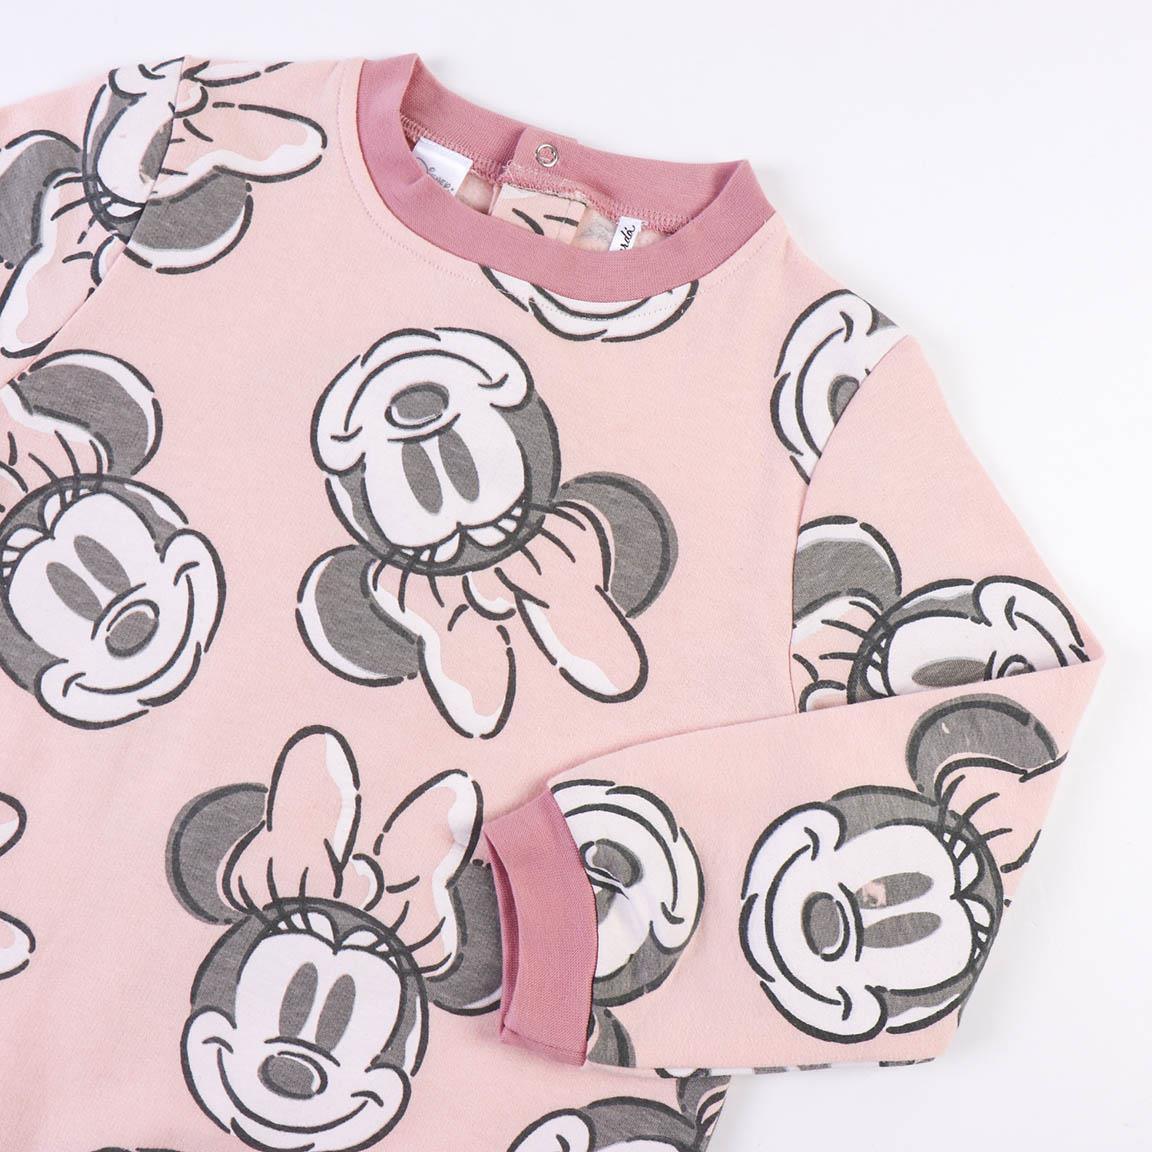 Tutina bimba - Disney Minnie - Magic Dreams Store